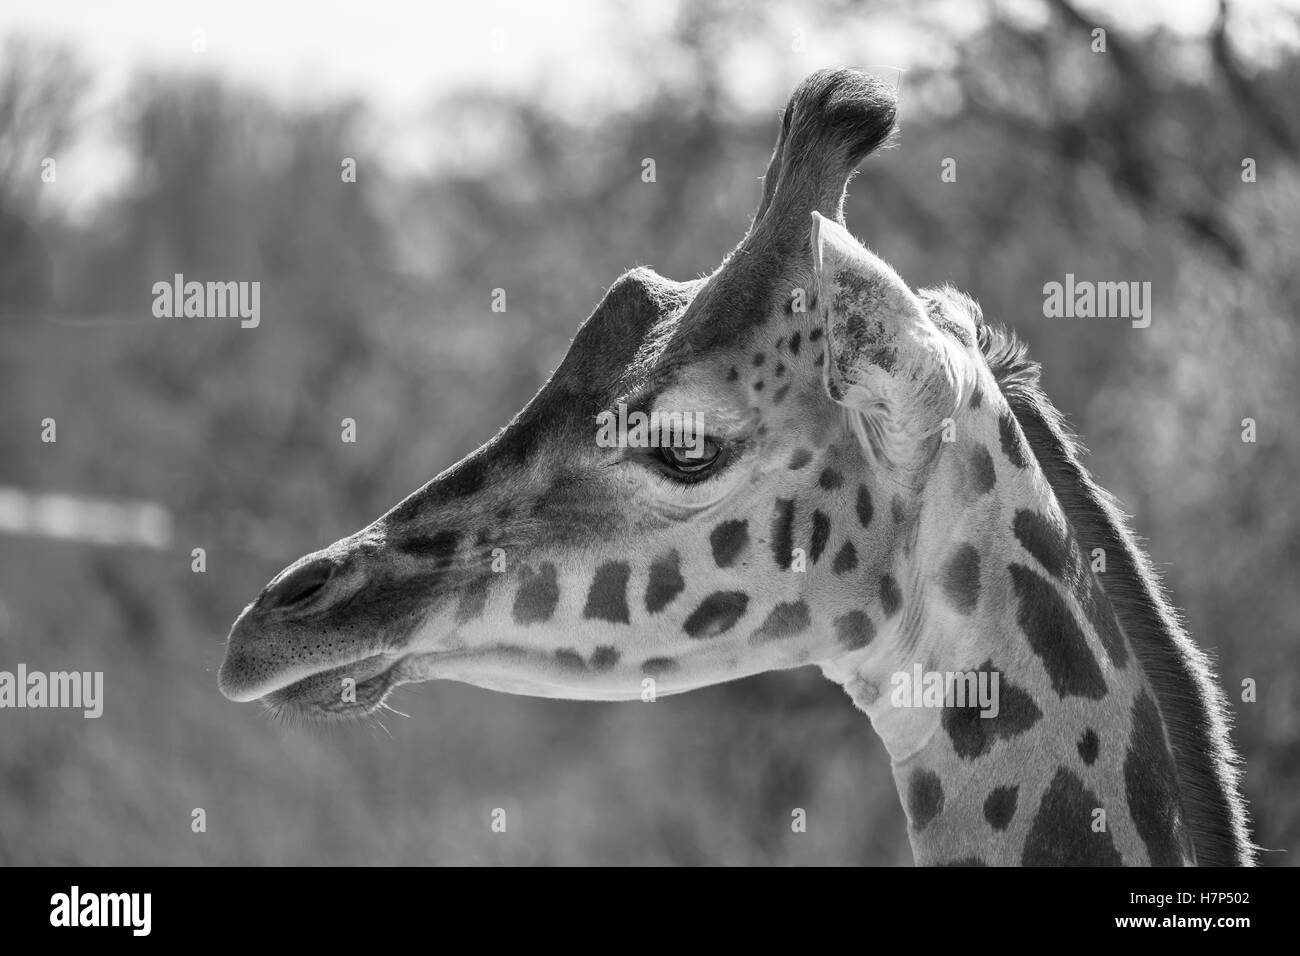 Retrato en blanco y negro de una jirafa Rothschild. Foto de stock